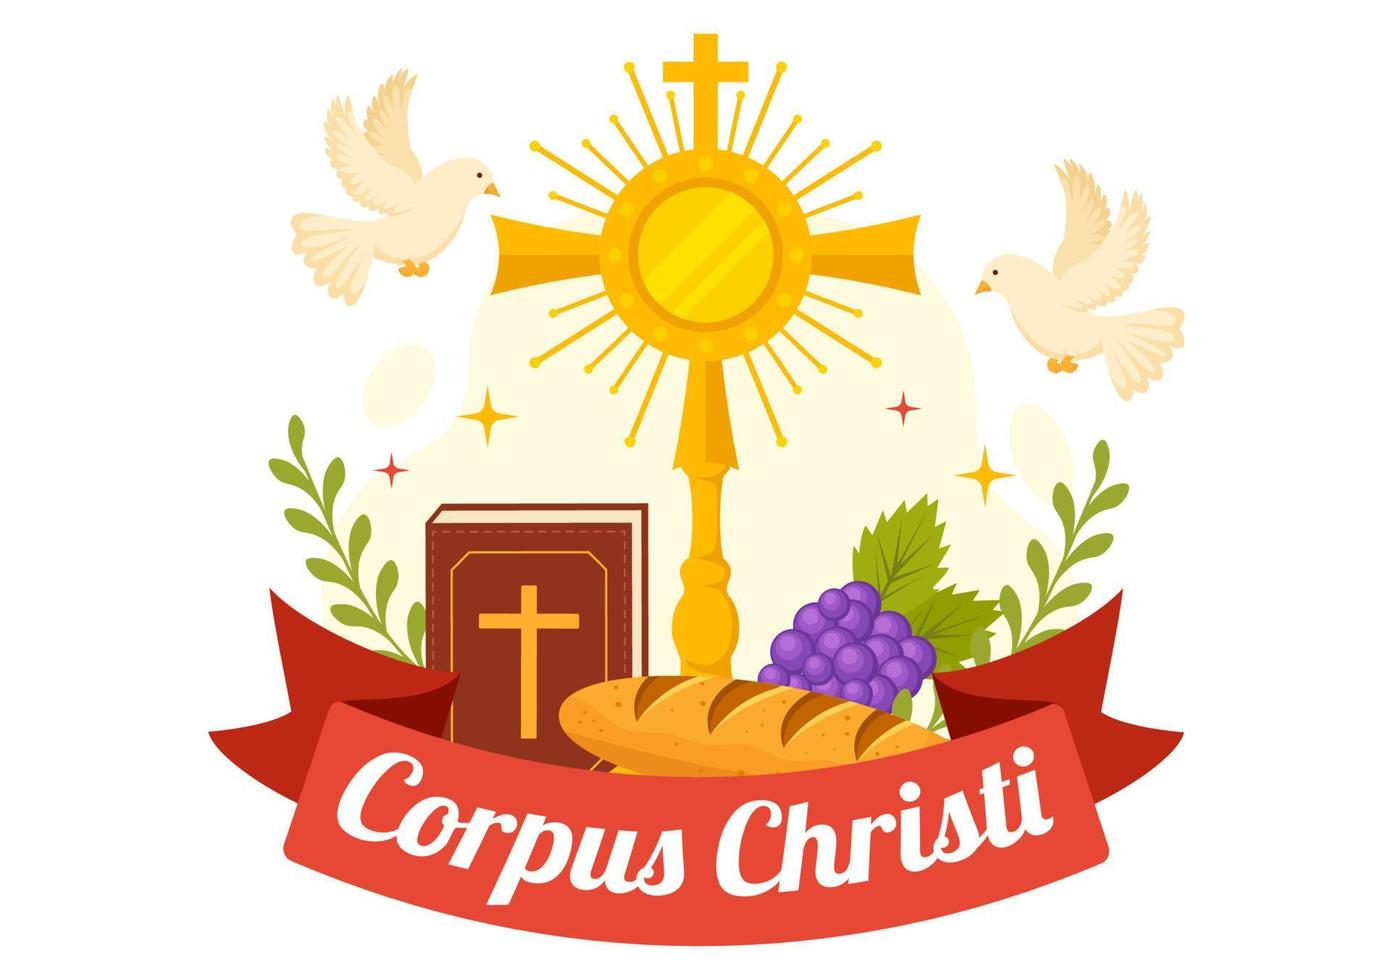 cuerpo christi católico religioso fiesta vector ilustración con banquete día, cruz, un pan y uvas en plano dibujos animados mano dibujado póster plantillas